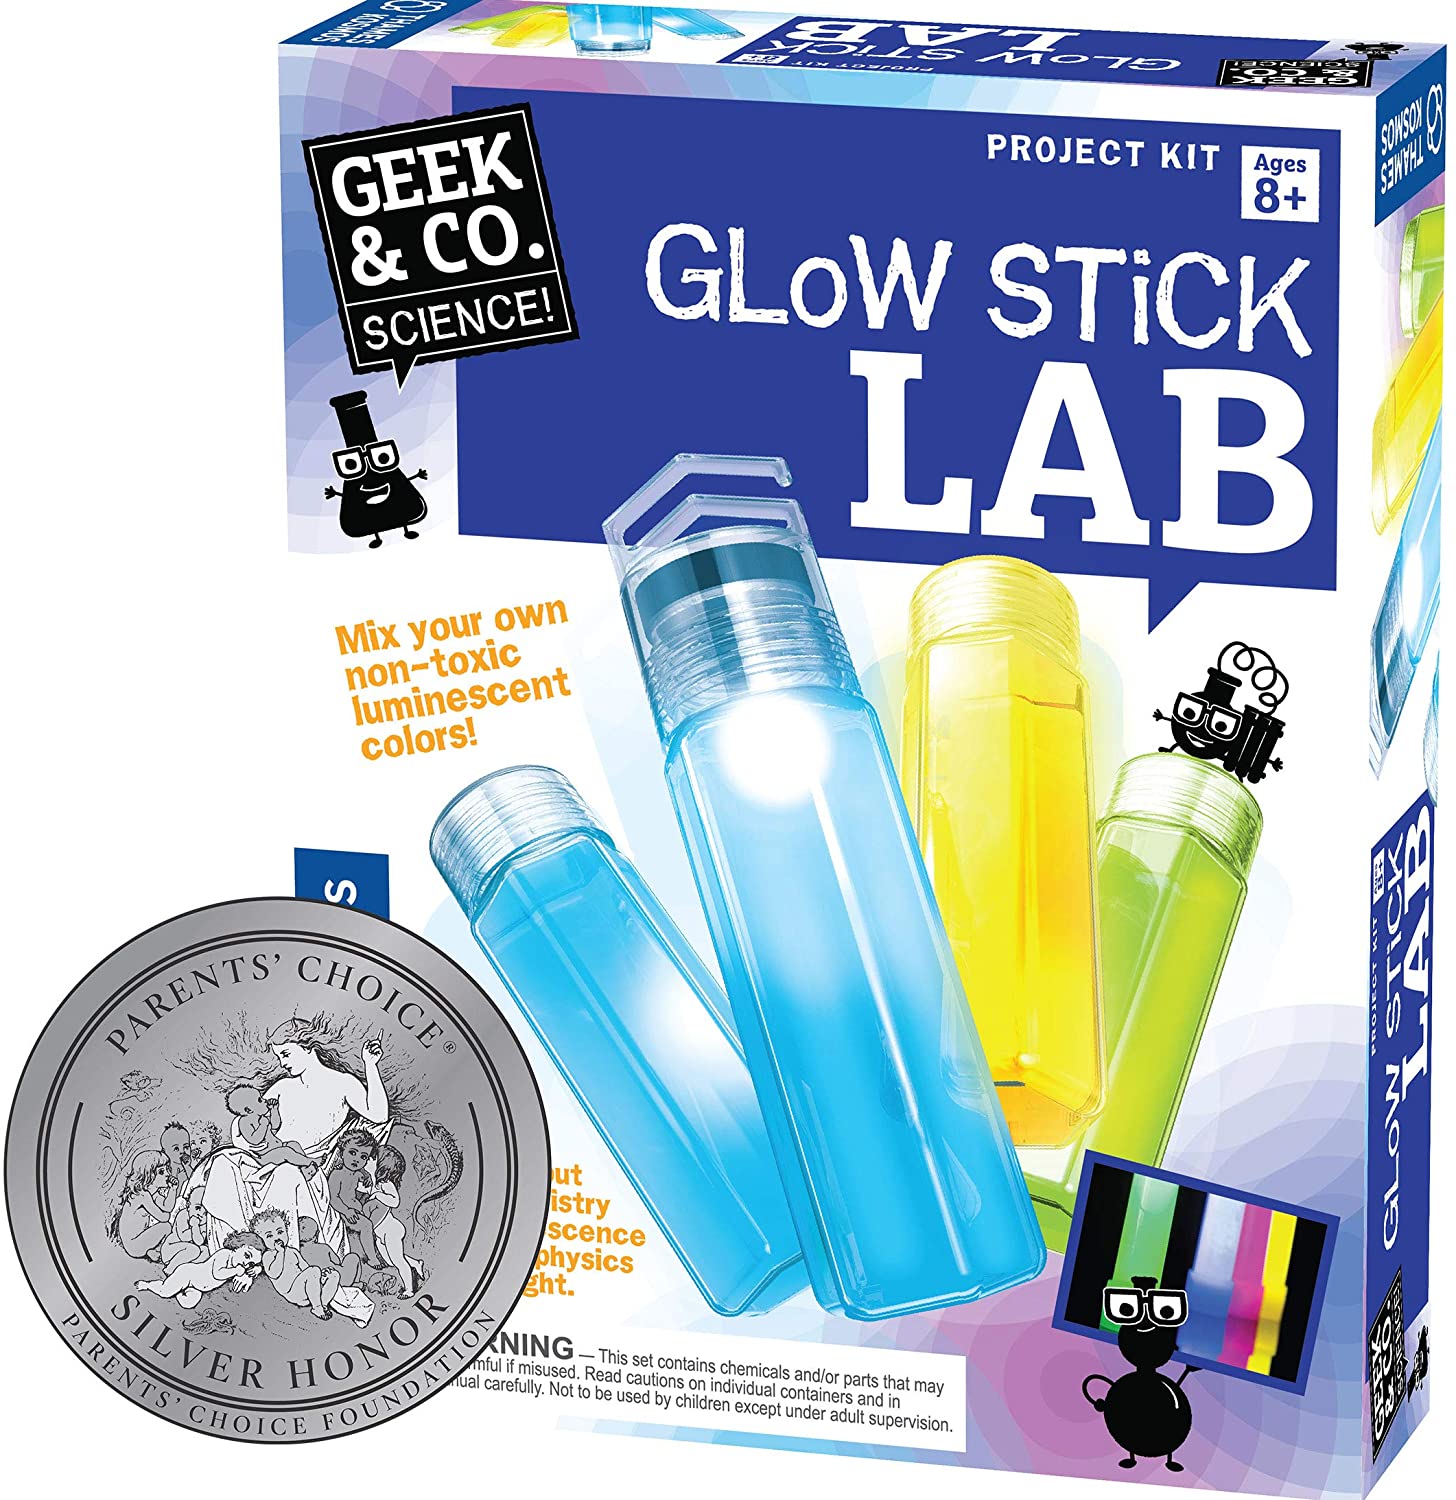 Glow stick lab